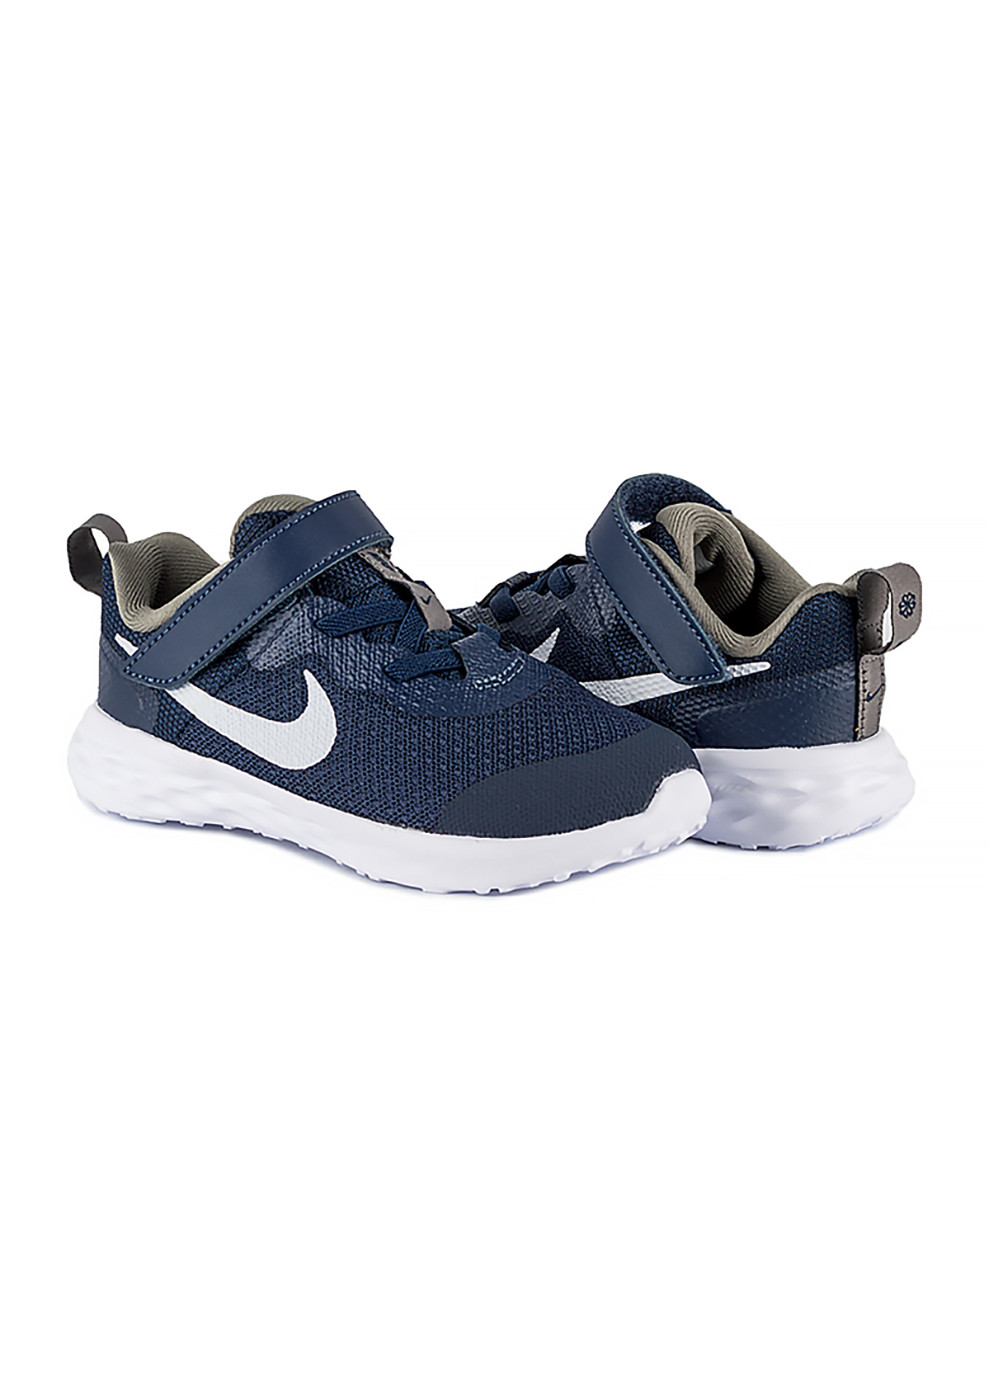 Синие демисезонные детские кроссовки revolution 6 nn (tdv) синий синий Nike